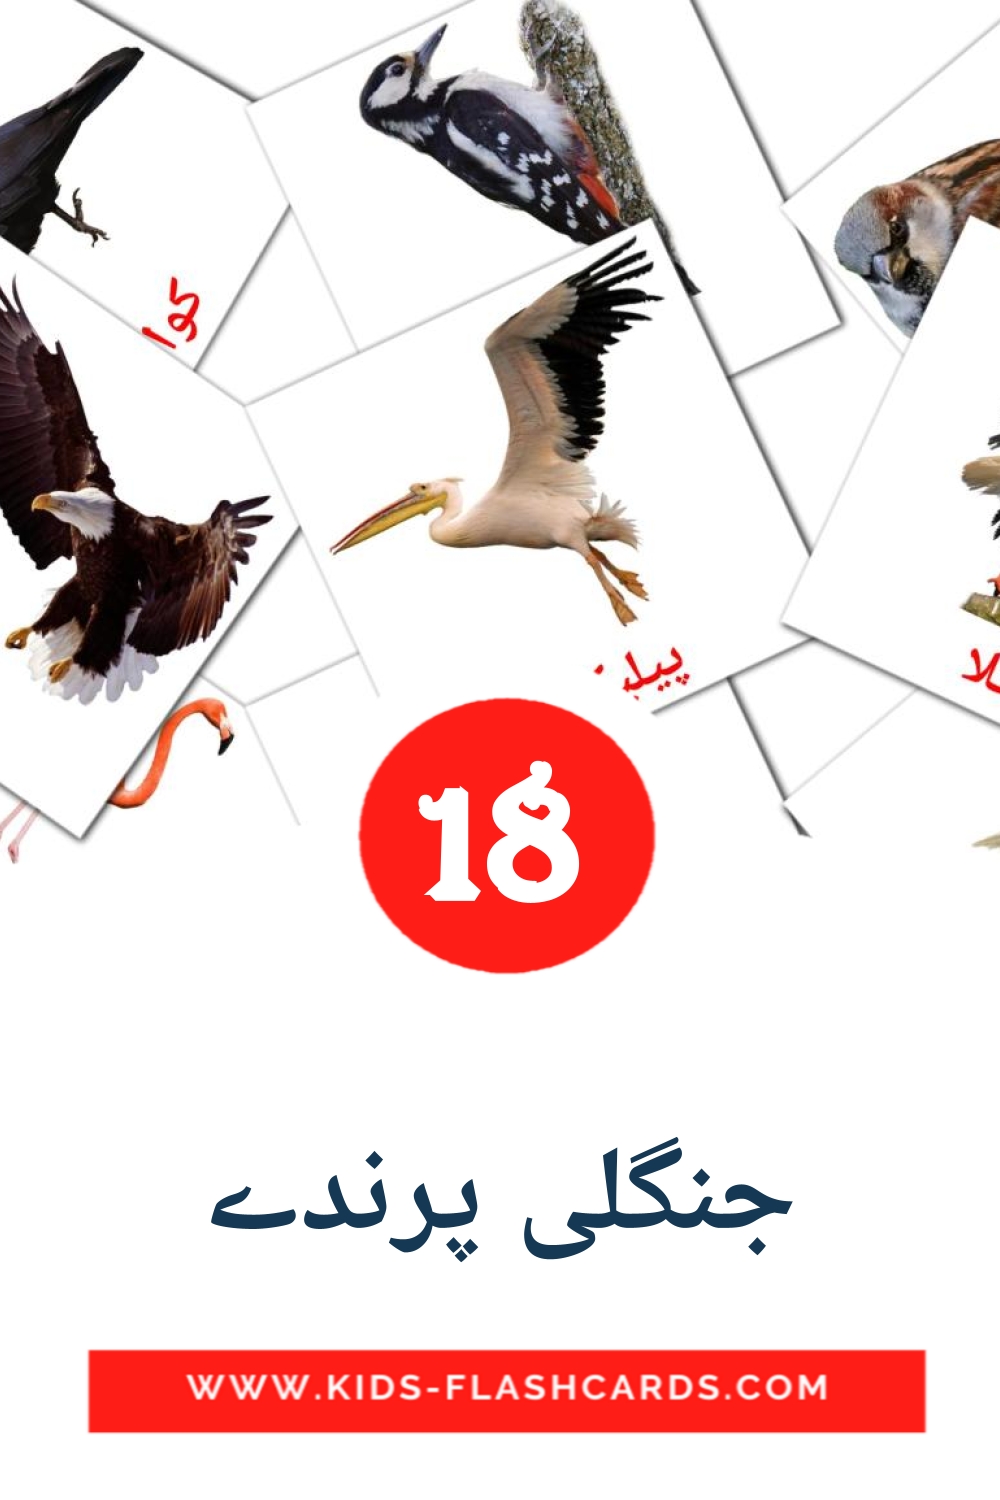 18 carte illustrate di جنگلی پرندے per la scuola materna in urdu